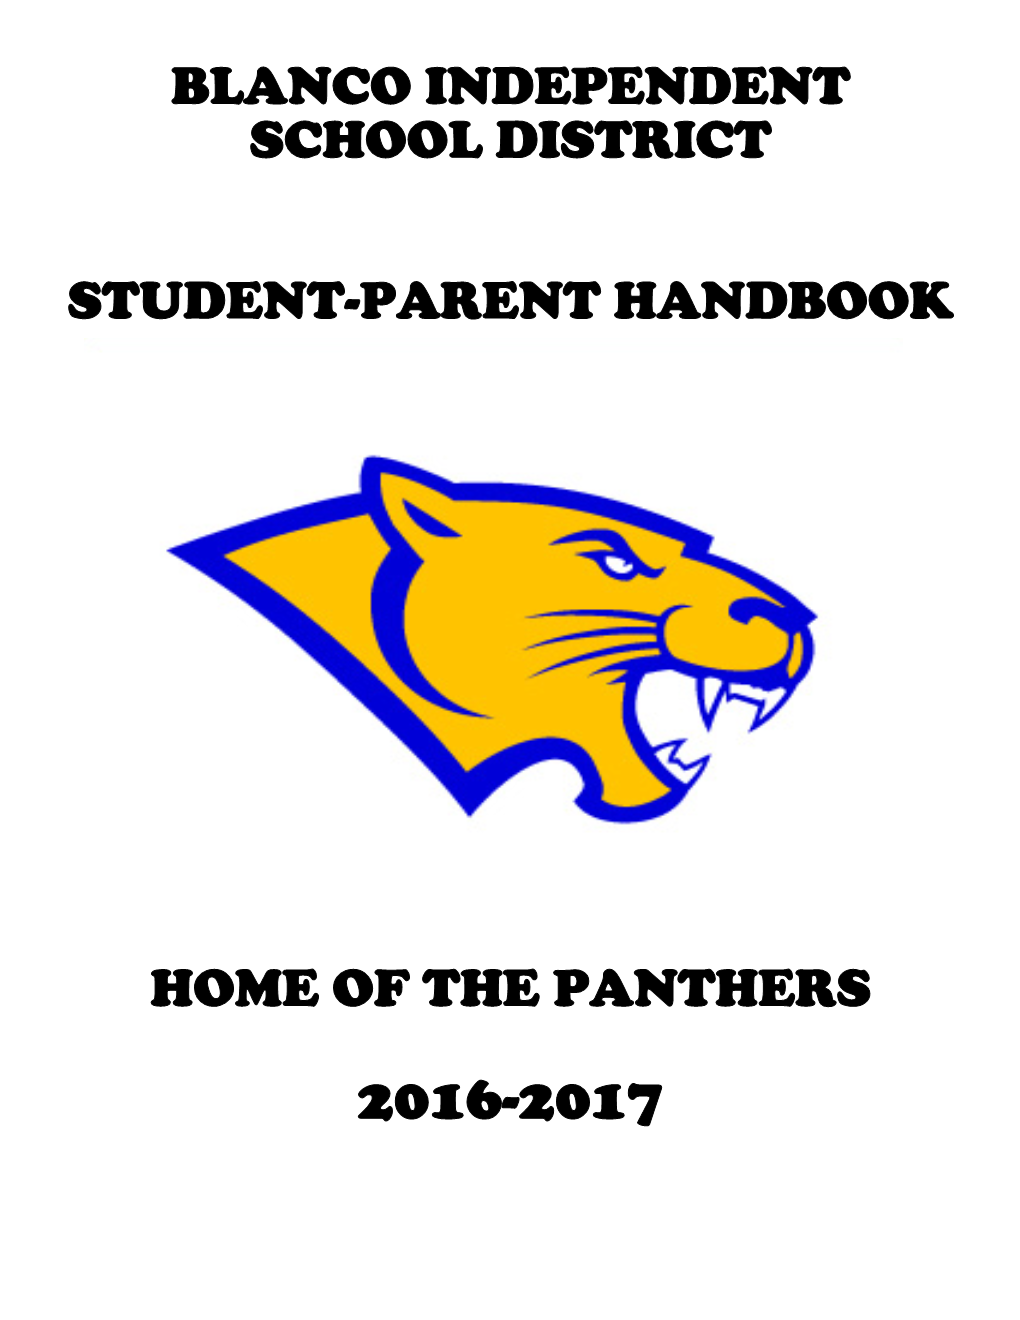 Blanco Independent School District Student-Parent Handbook Home Of